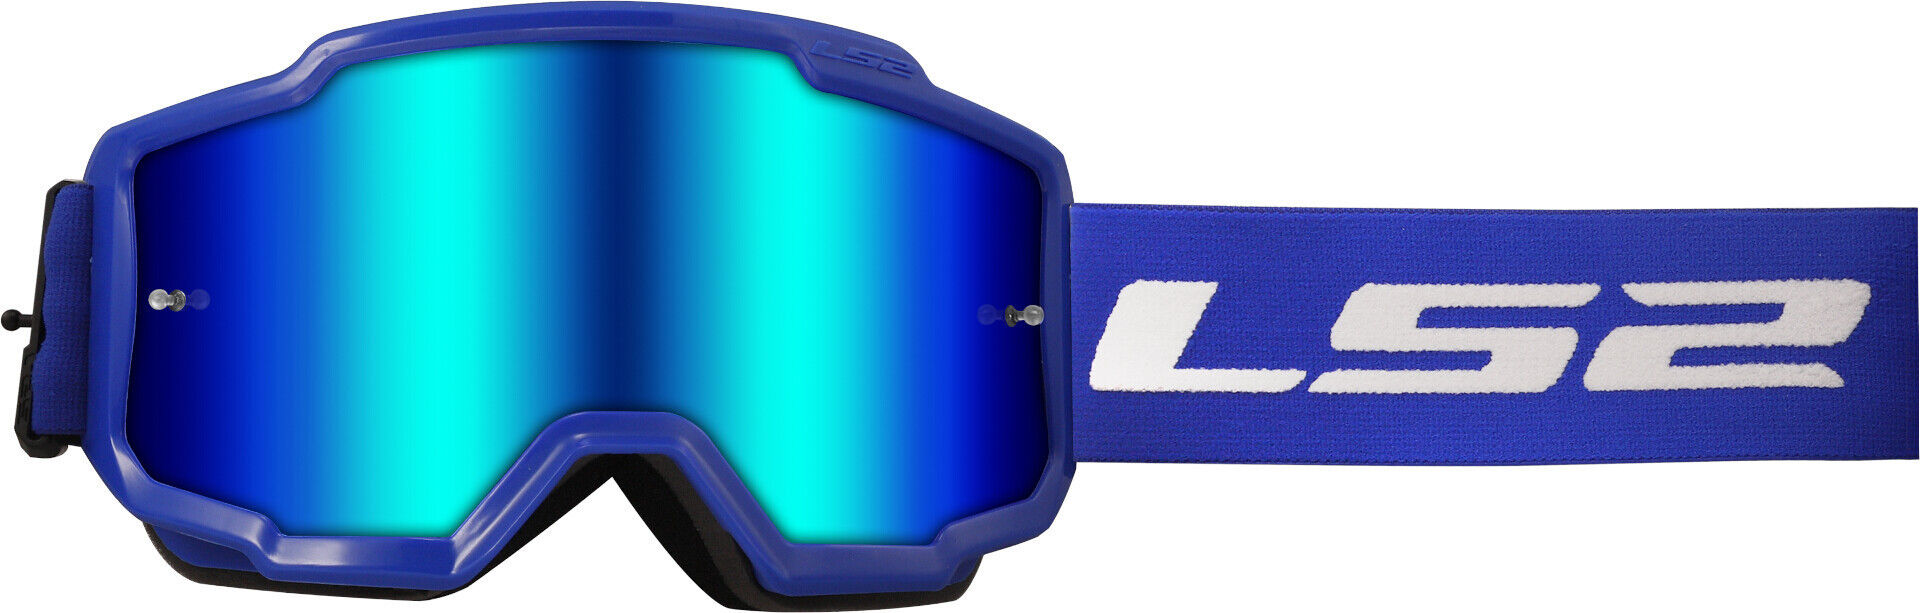 LS2 Charger Gafas de motocross - Azul